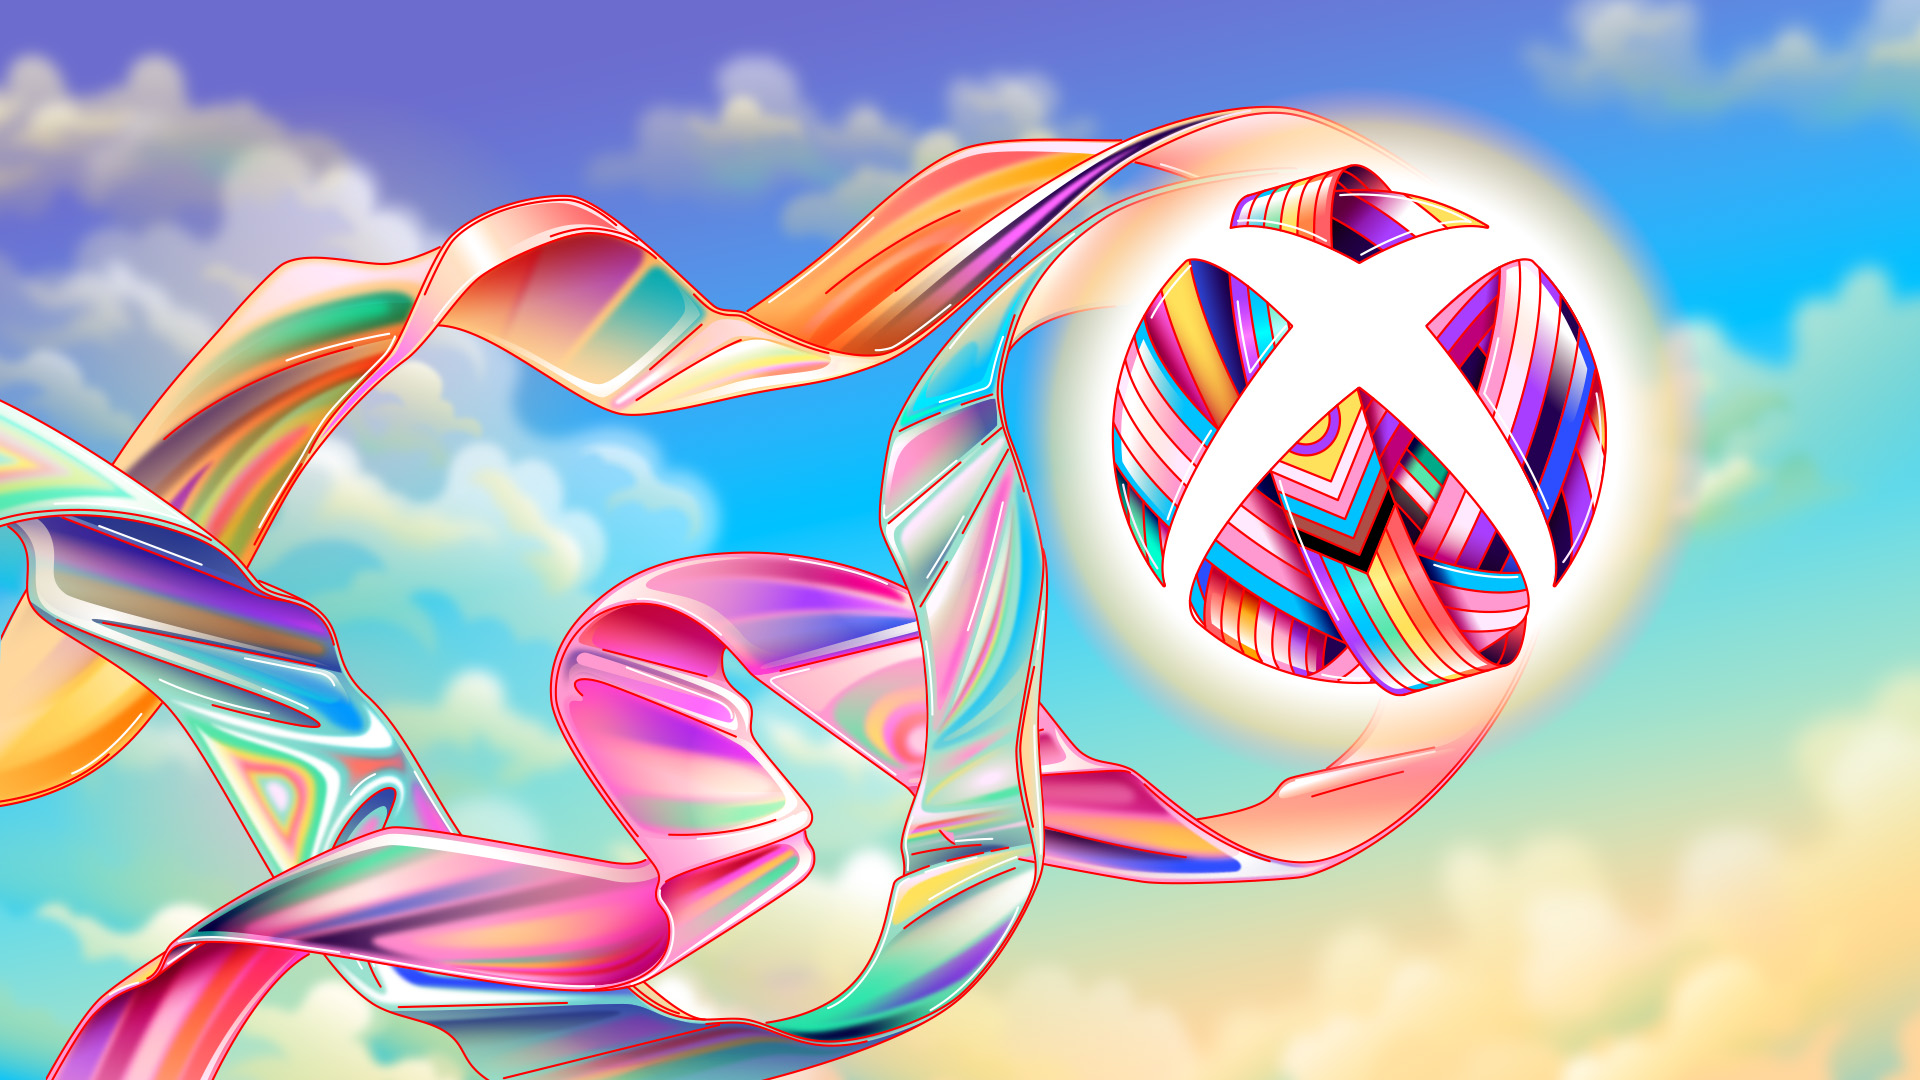 Logotipo estilizado do Xbox em apoio ao Mês do Orgulho, incluindo fitas coloridas envolvendo a esfera em um fundo de céu pastel.